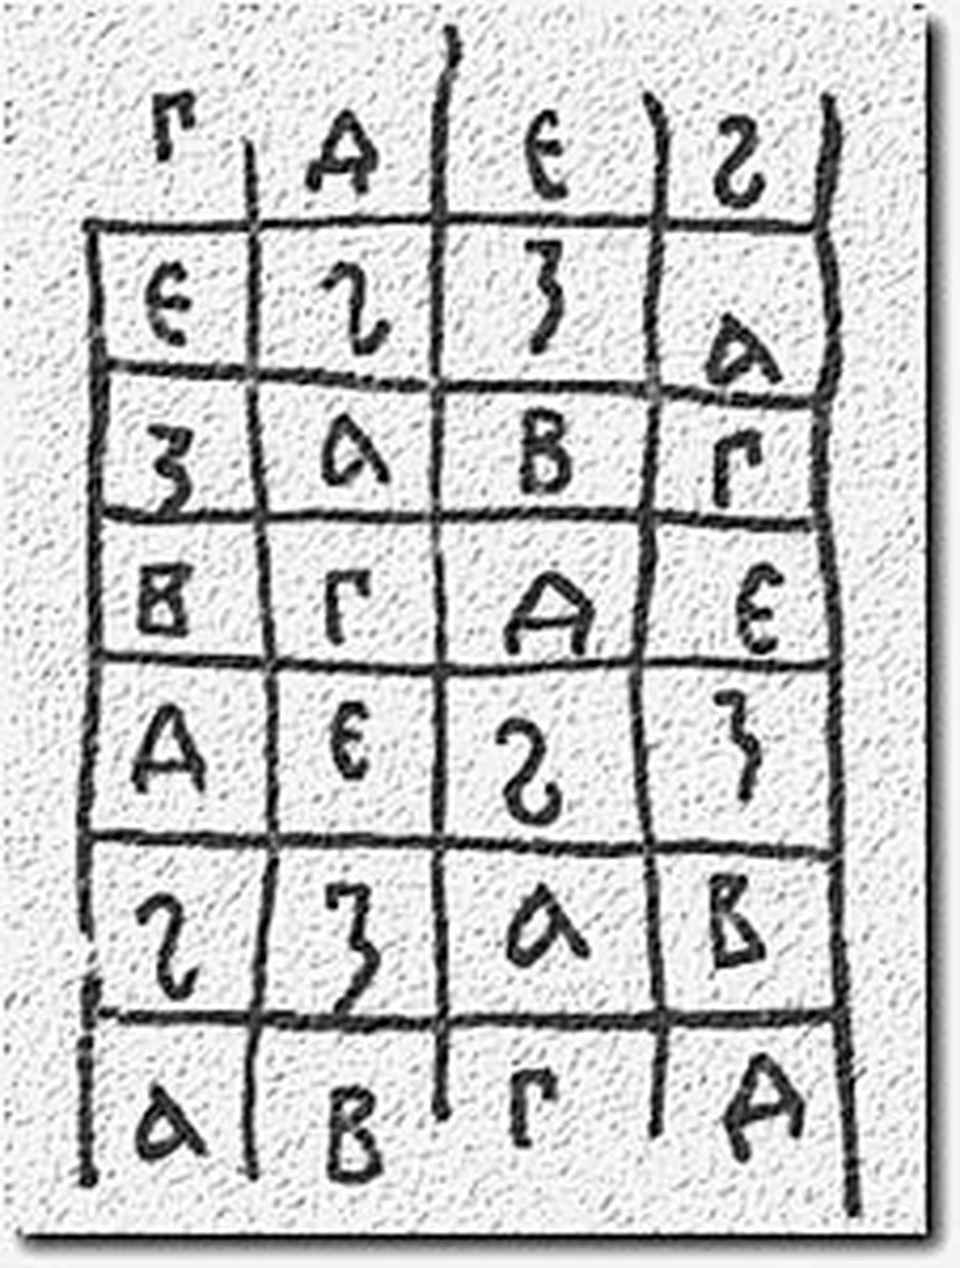 С этой древней таблицы (XIII век), обнаруженной на стене Софийского собора, Пахомов приступил к расшифровке криптограмм.